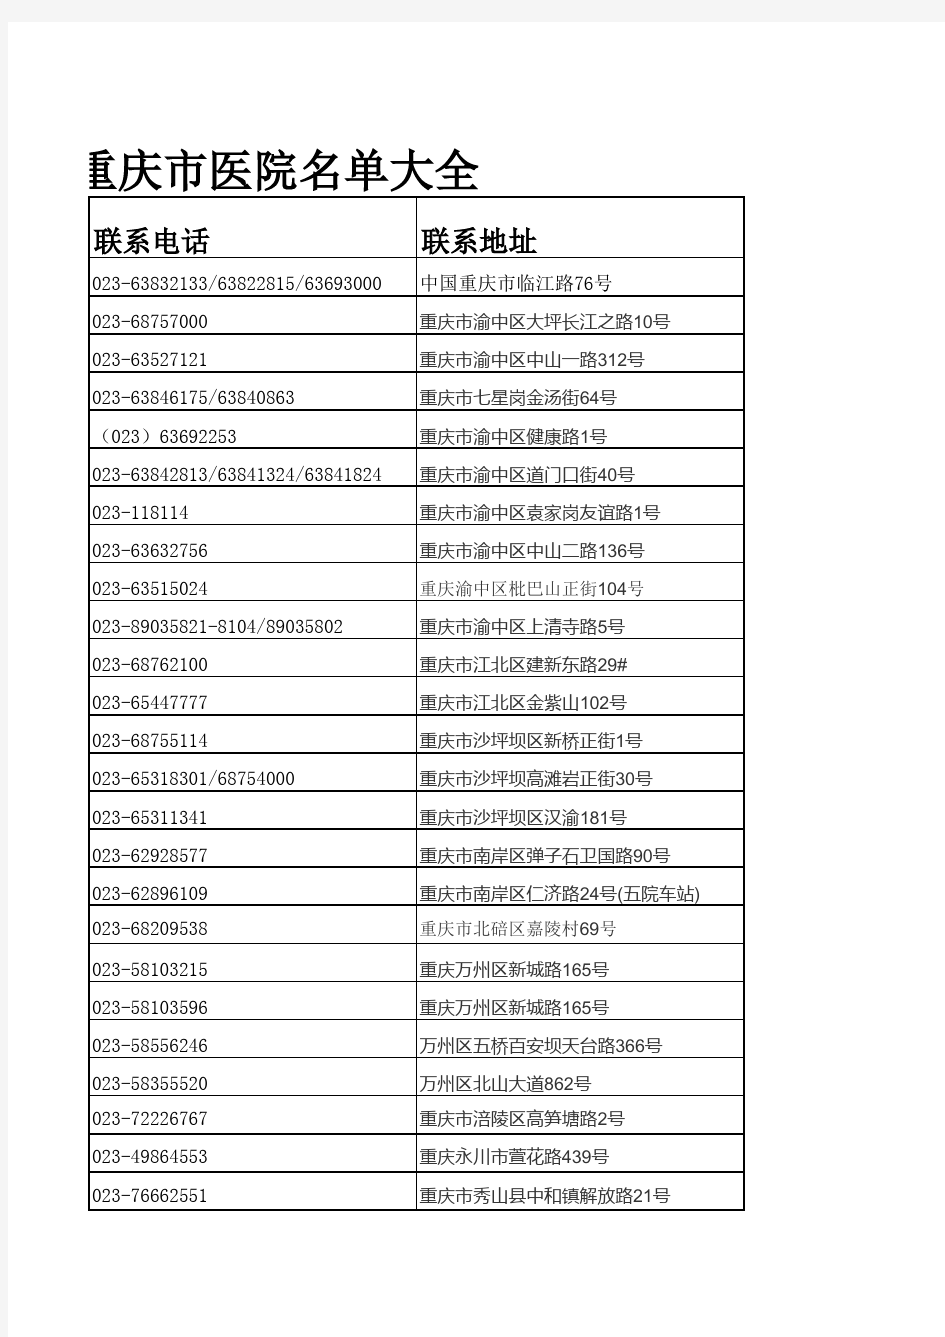 重庆市二级以上医院名单(自己整理)